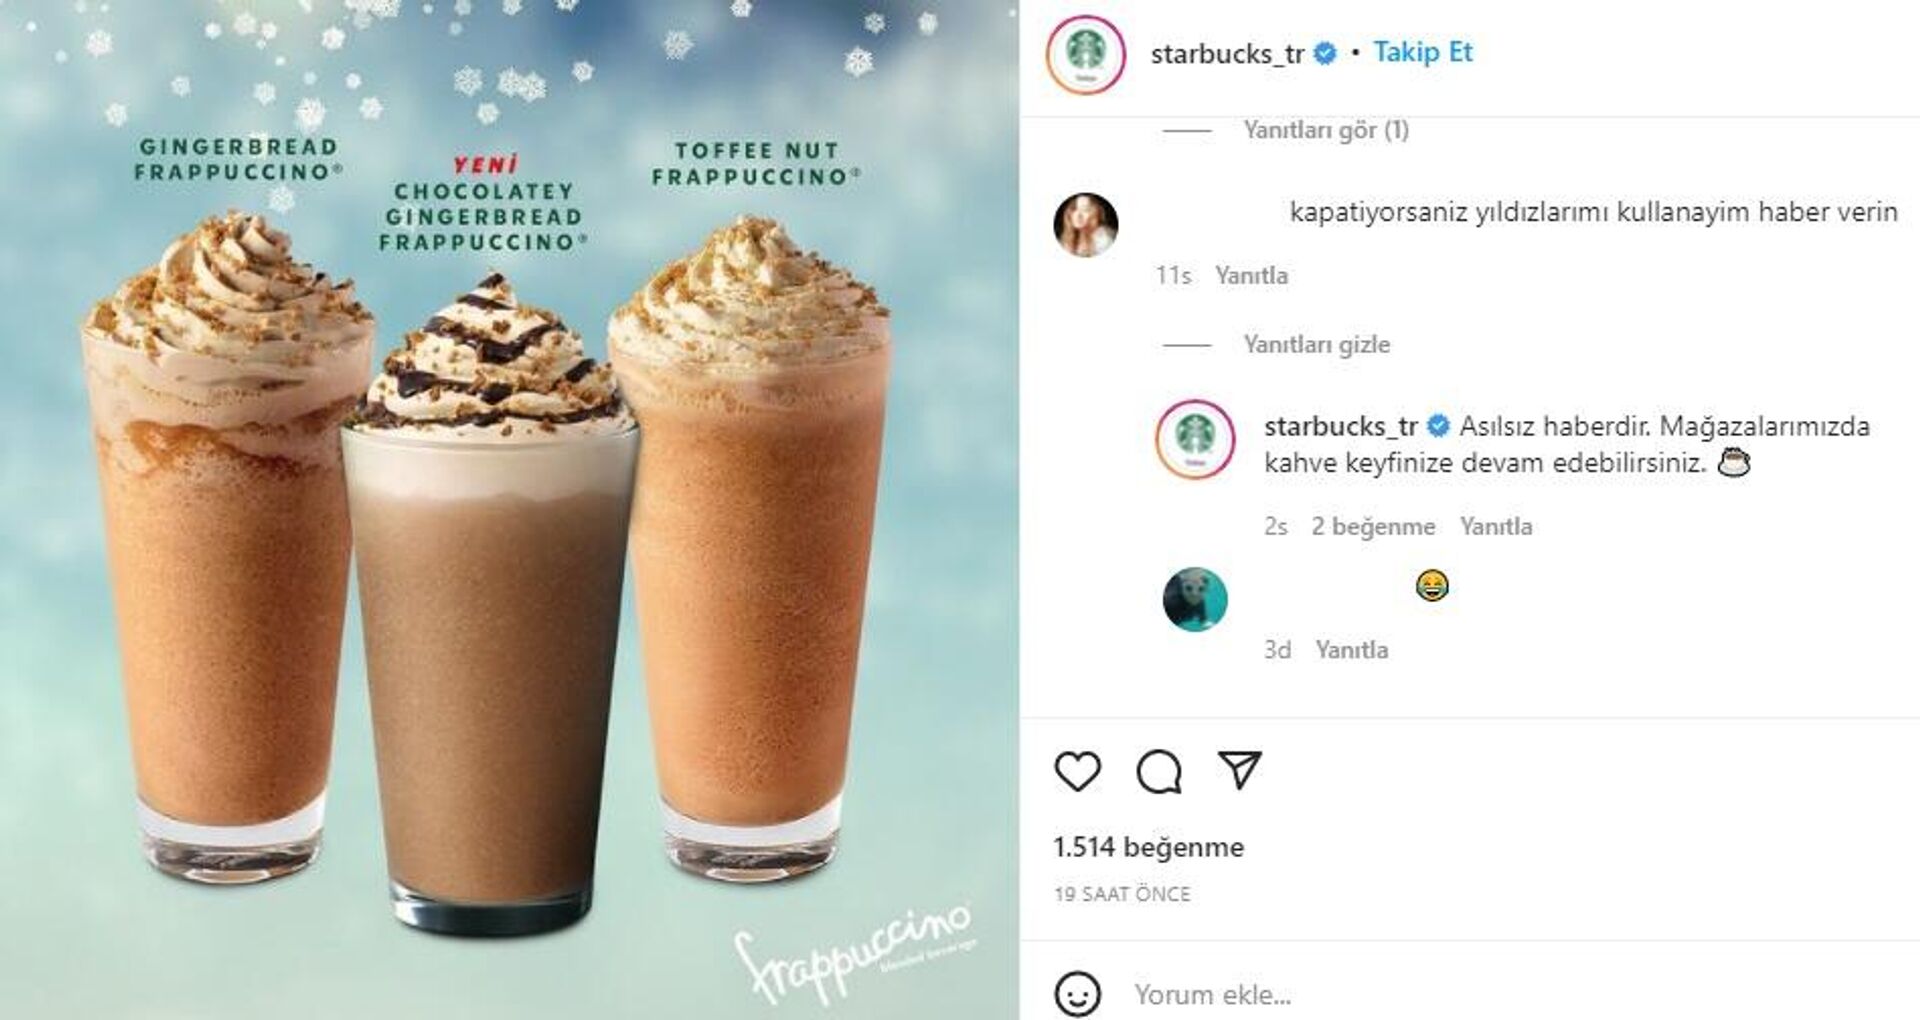 Starbucks Türkiye, Instagram hesabından Asılsız haberdir. Mağazalarımızda kahve keyfinize devam edebilirsiniz yanıtını verdi. - Sputnik Türkiye, 1920, 25.11.2021